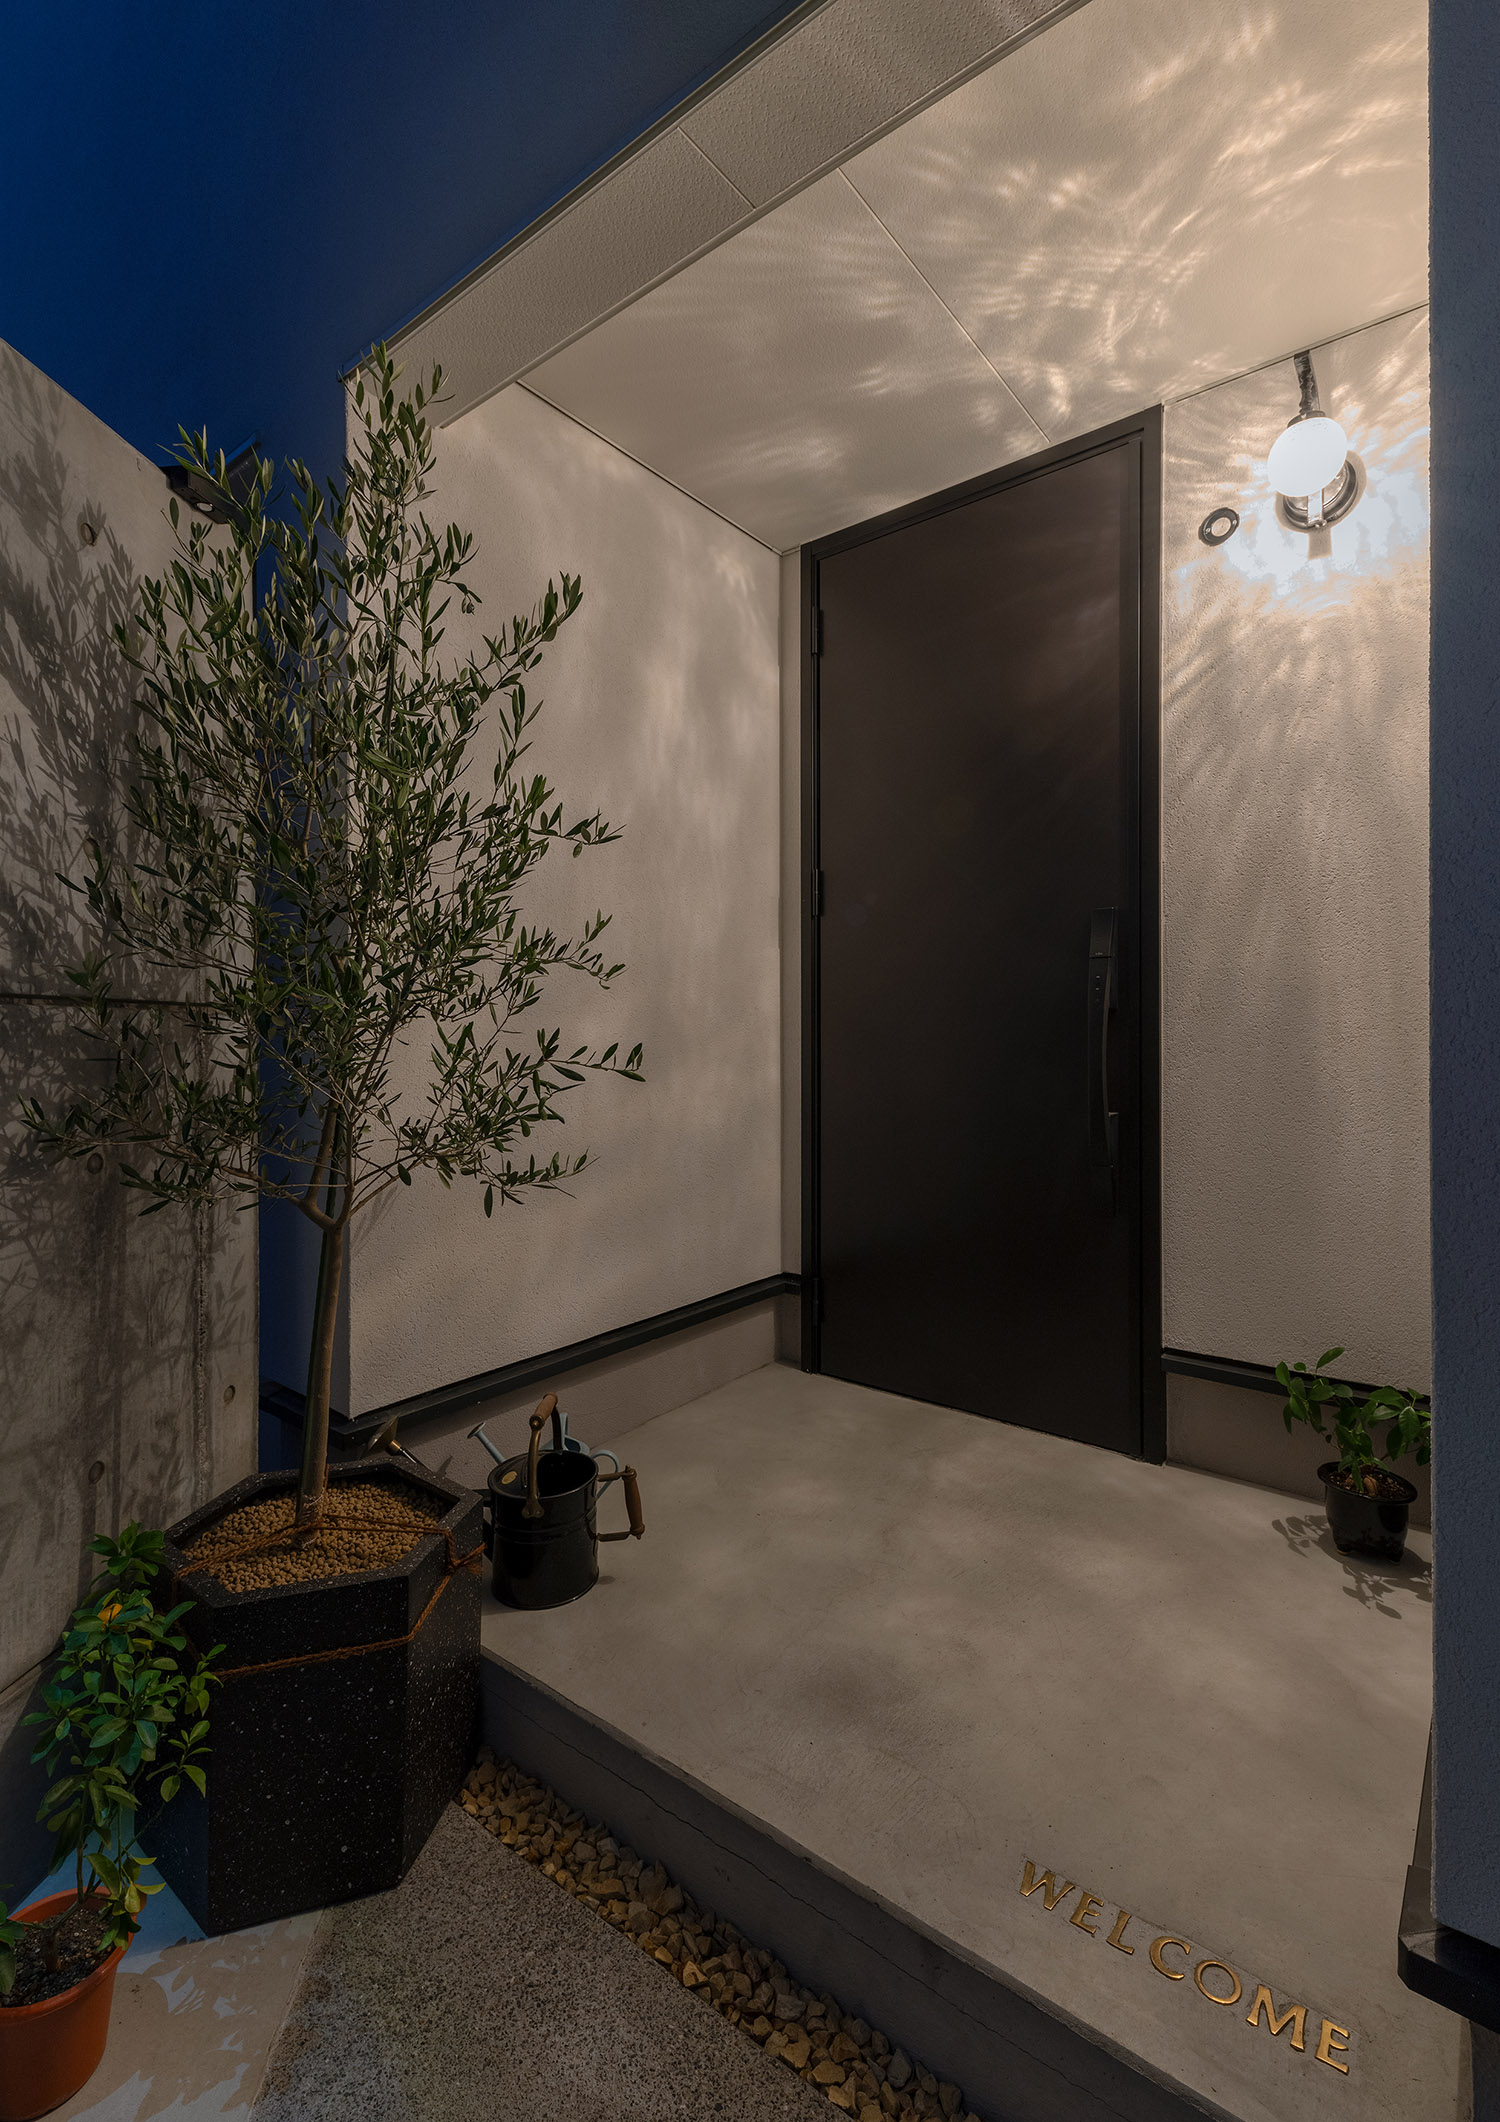 壁におしゃれな間接照明が取り付けられた植栽のあるおしゃれな玄関アプローチ・デザイン住宅